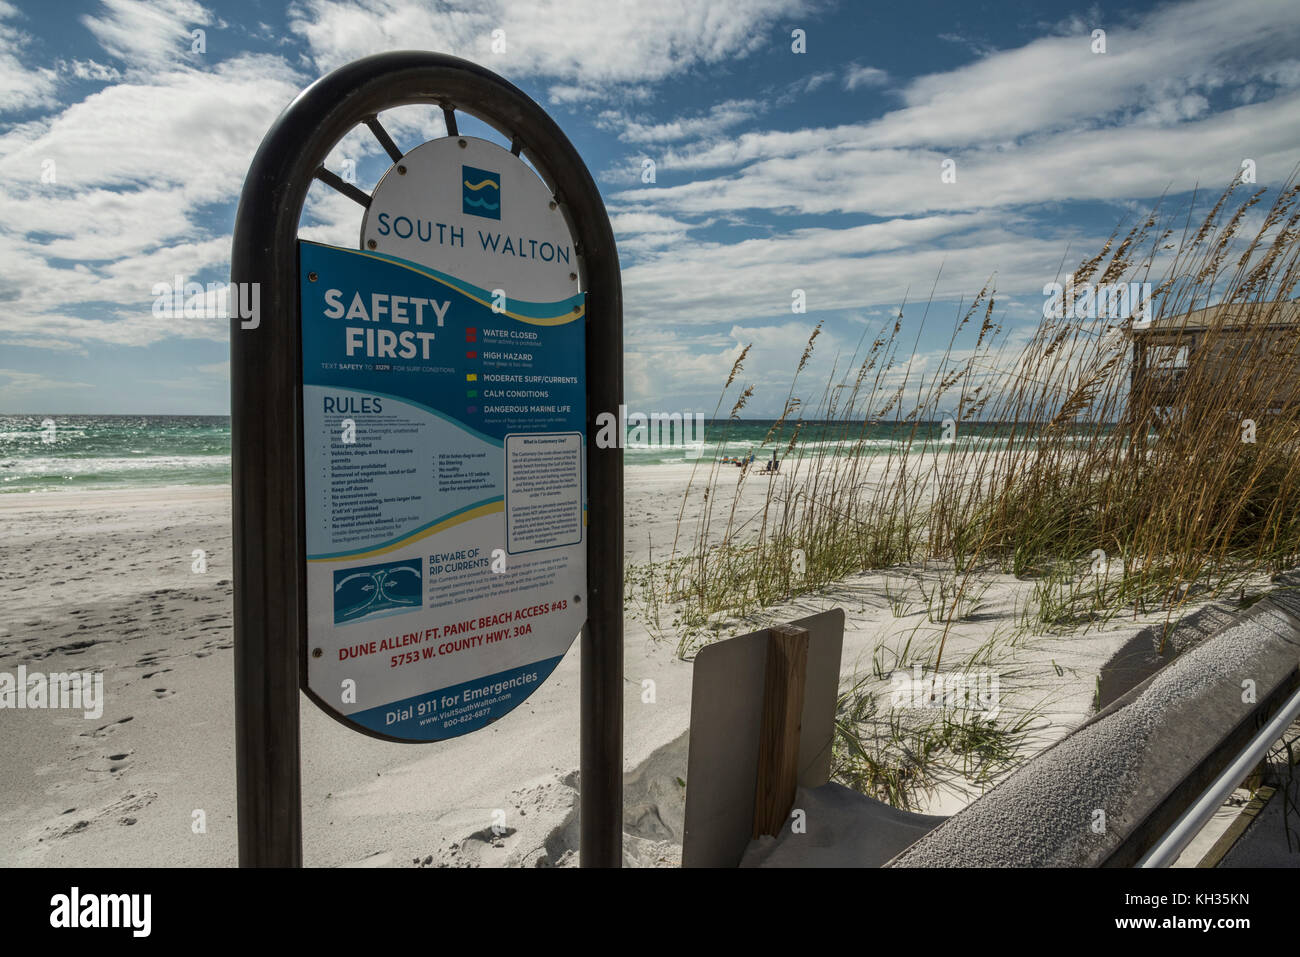 South Walton Dune Allen Picnic Beach Access #43 Florida Gulf Coast Stock Photo